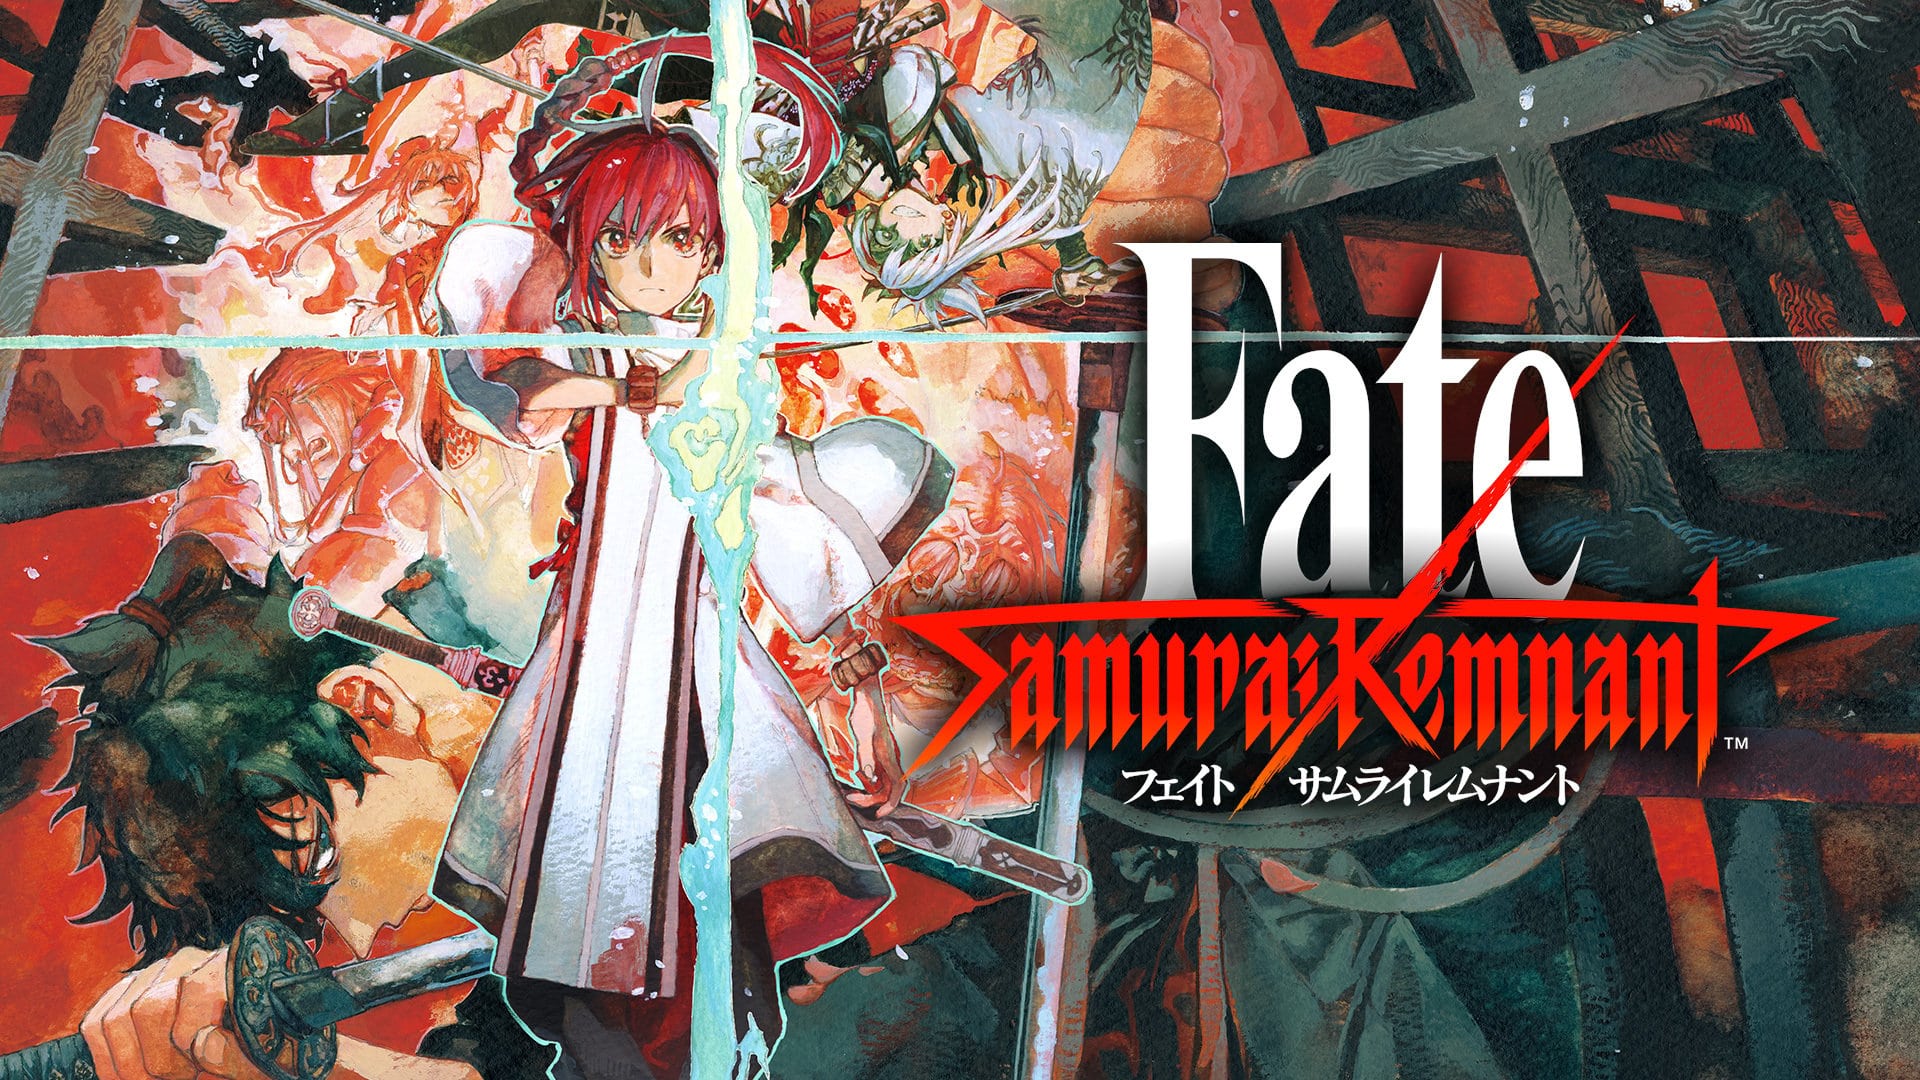 Video Game Fate Samurai Remnant | Cure All